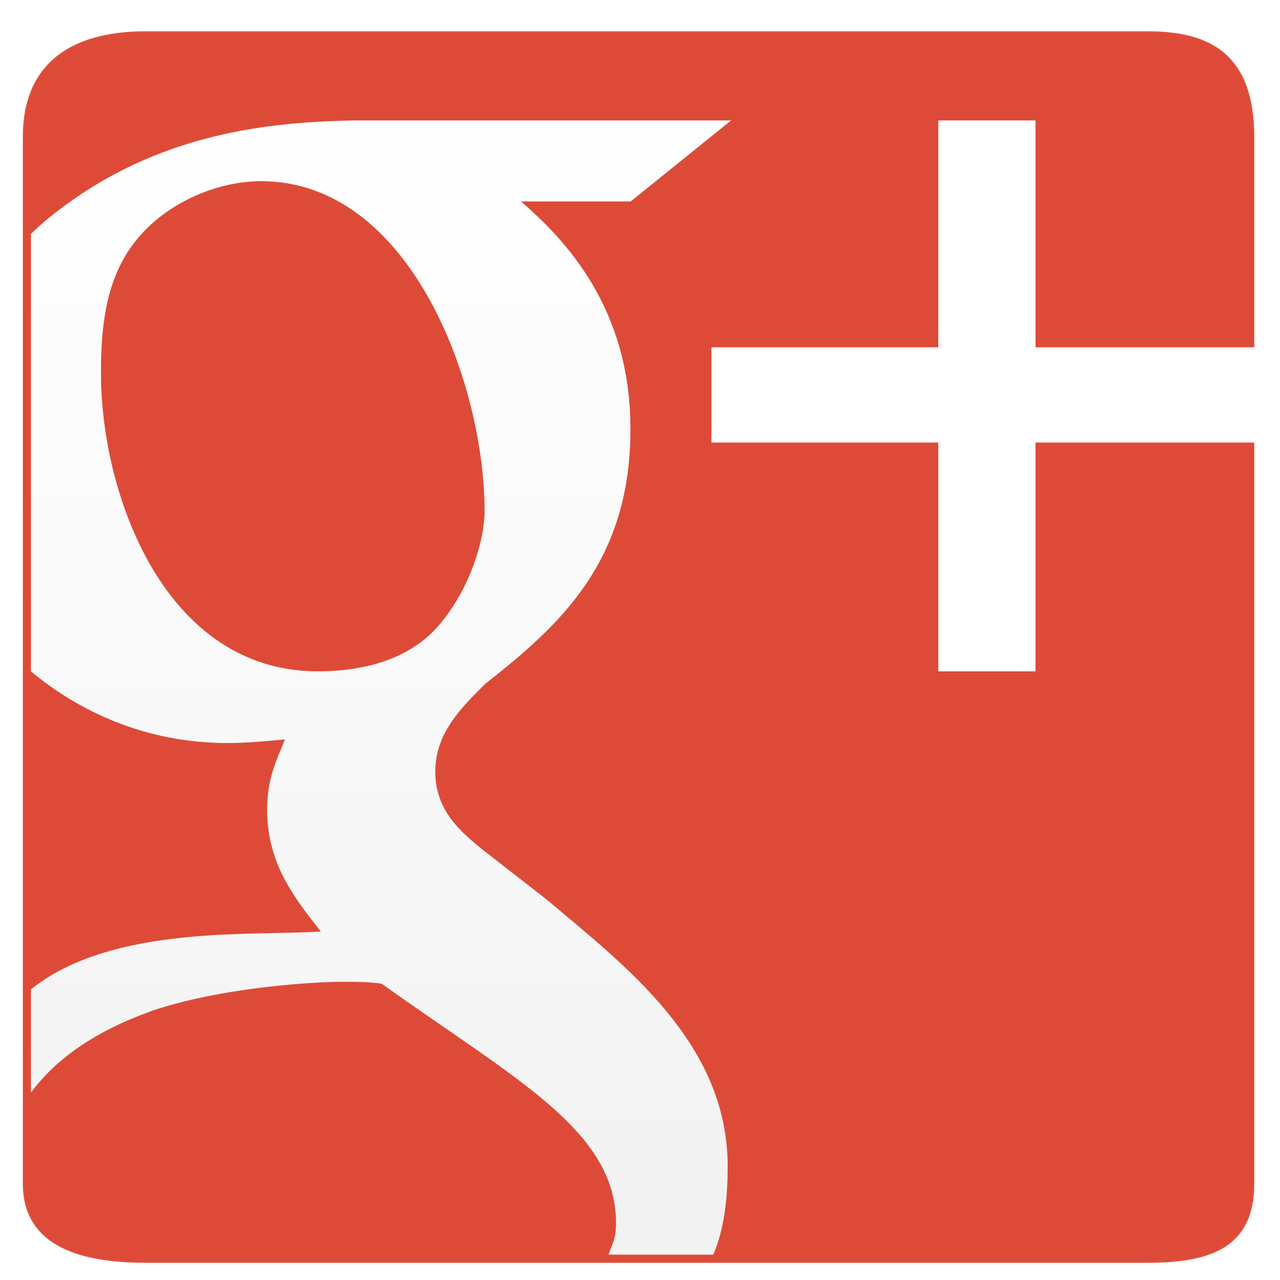 Google+ zostanie wyłączone. Znamy datę zamknięcia serwisu